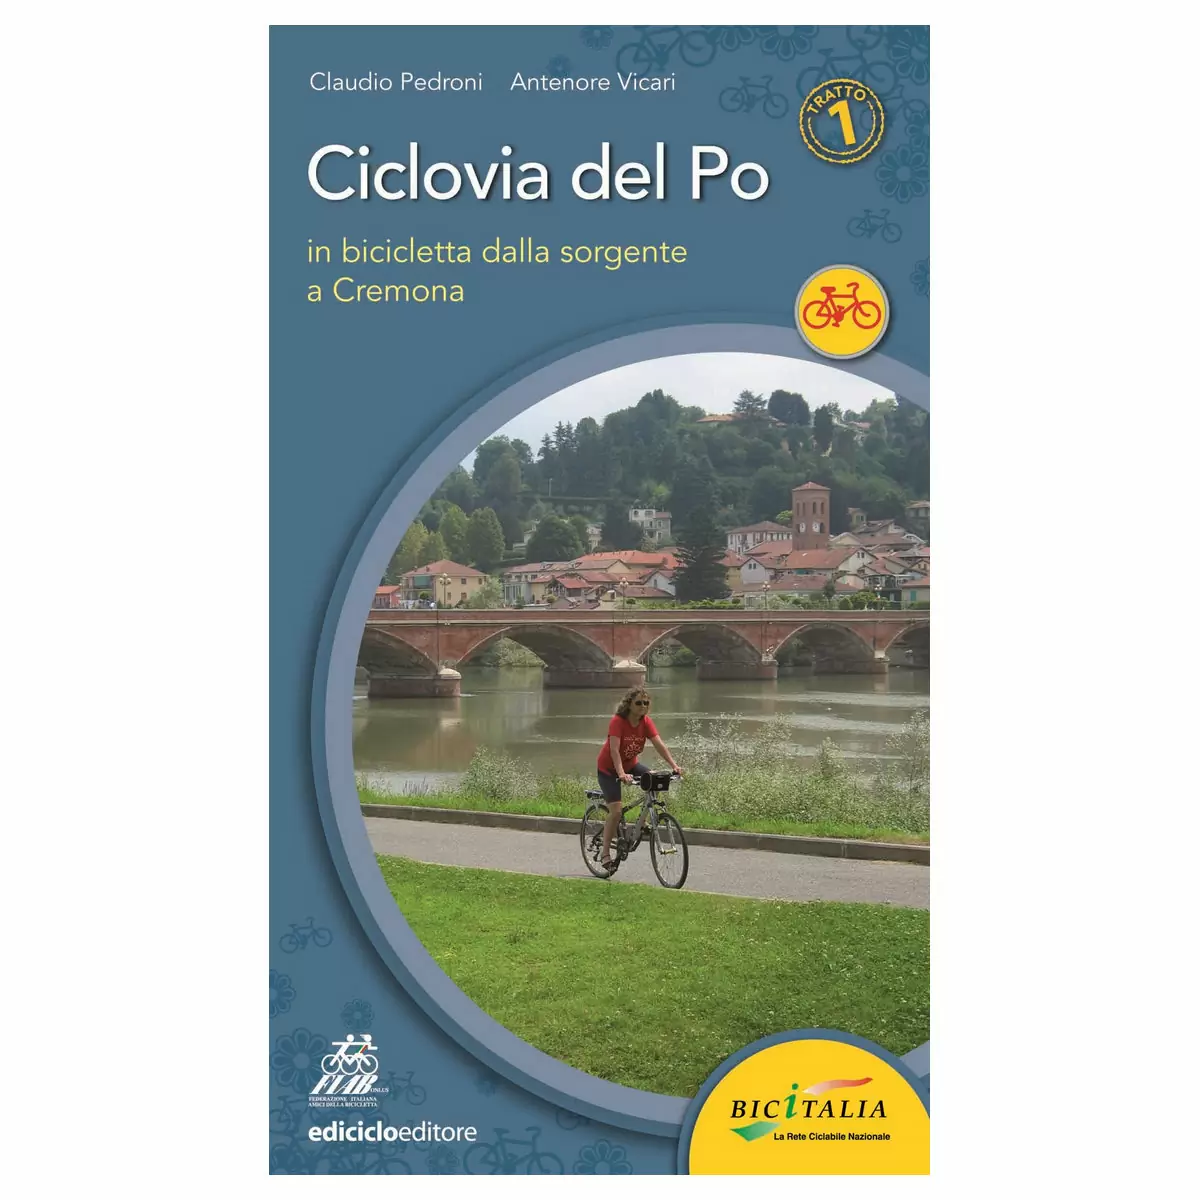 Libro Ciclovia del Po tratto 1- Dalla sorgente a Cremona, Pedroni, Vicari - image